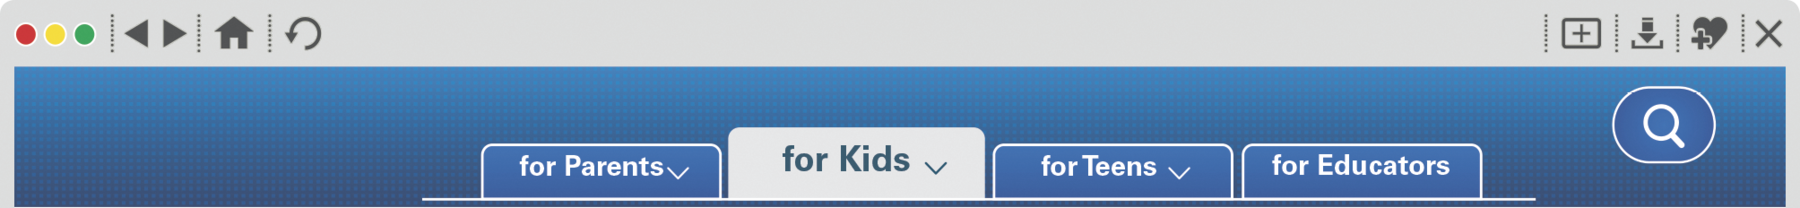 Reprodução de página da internet.  Na parte superior azul, quatro abas com os textos for Parents, for kids, for teens, for educators. A aba aberta é a for teens. À direita um botão com ilustração de lupa.